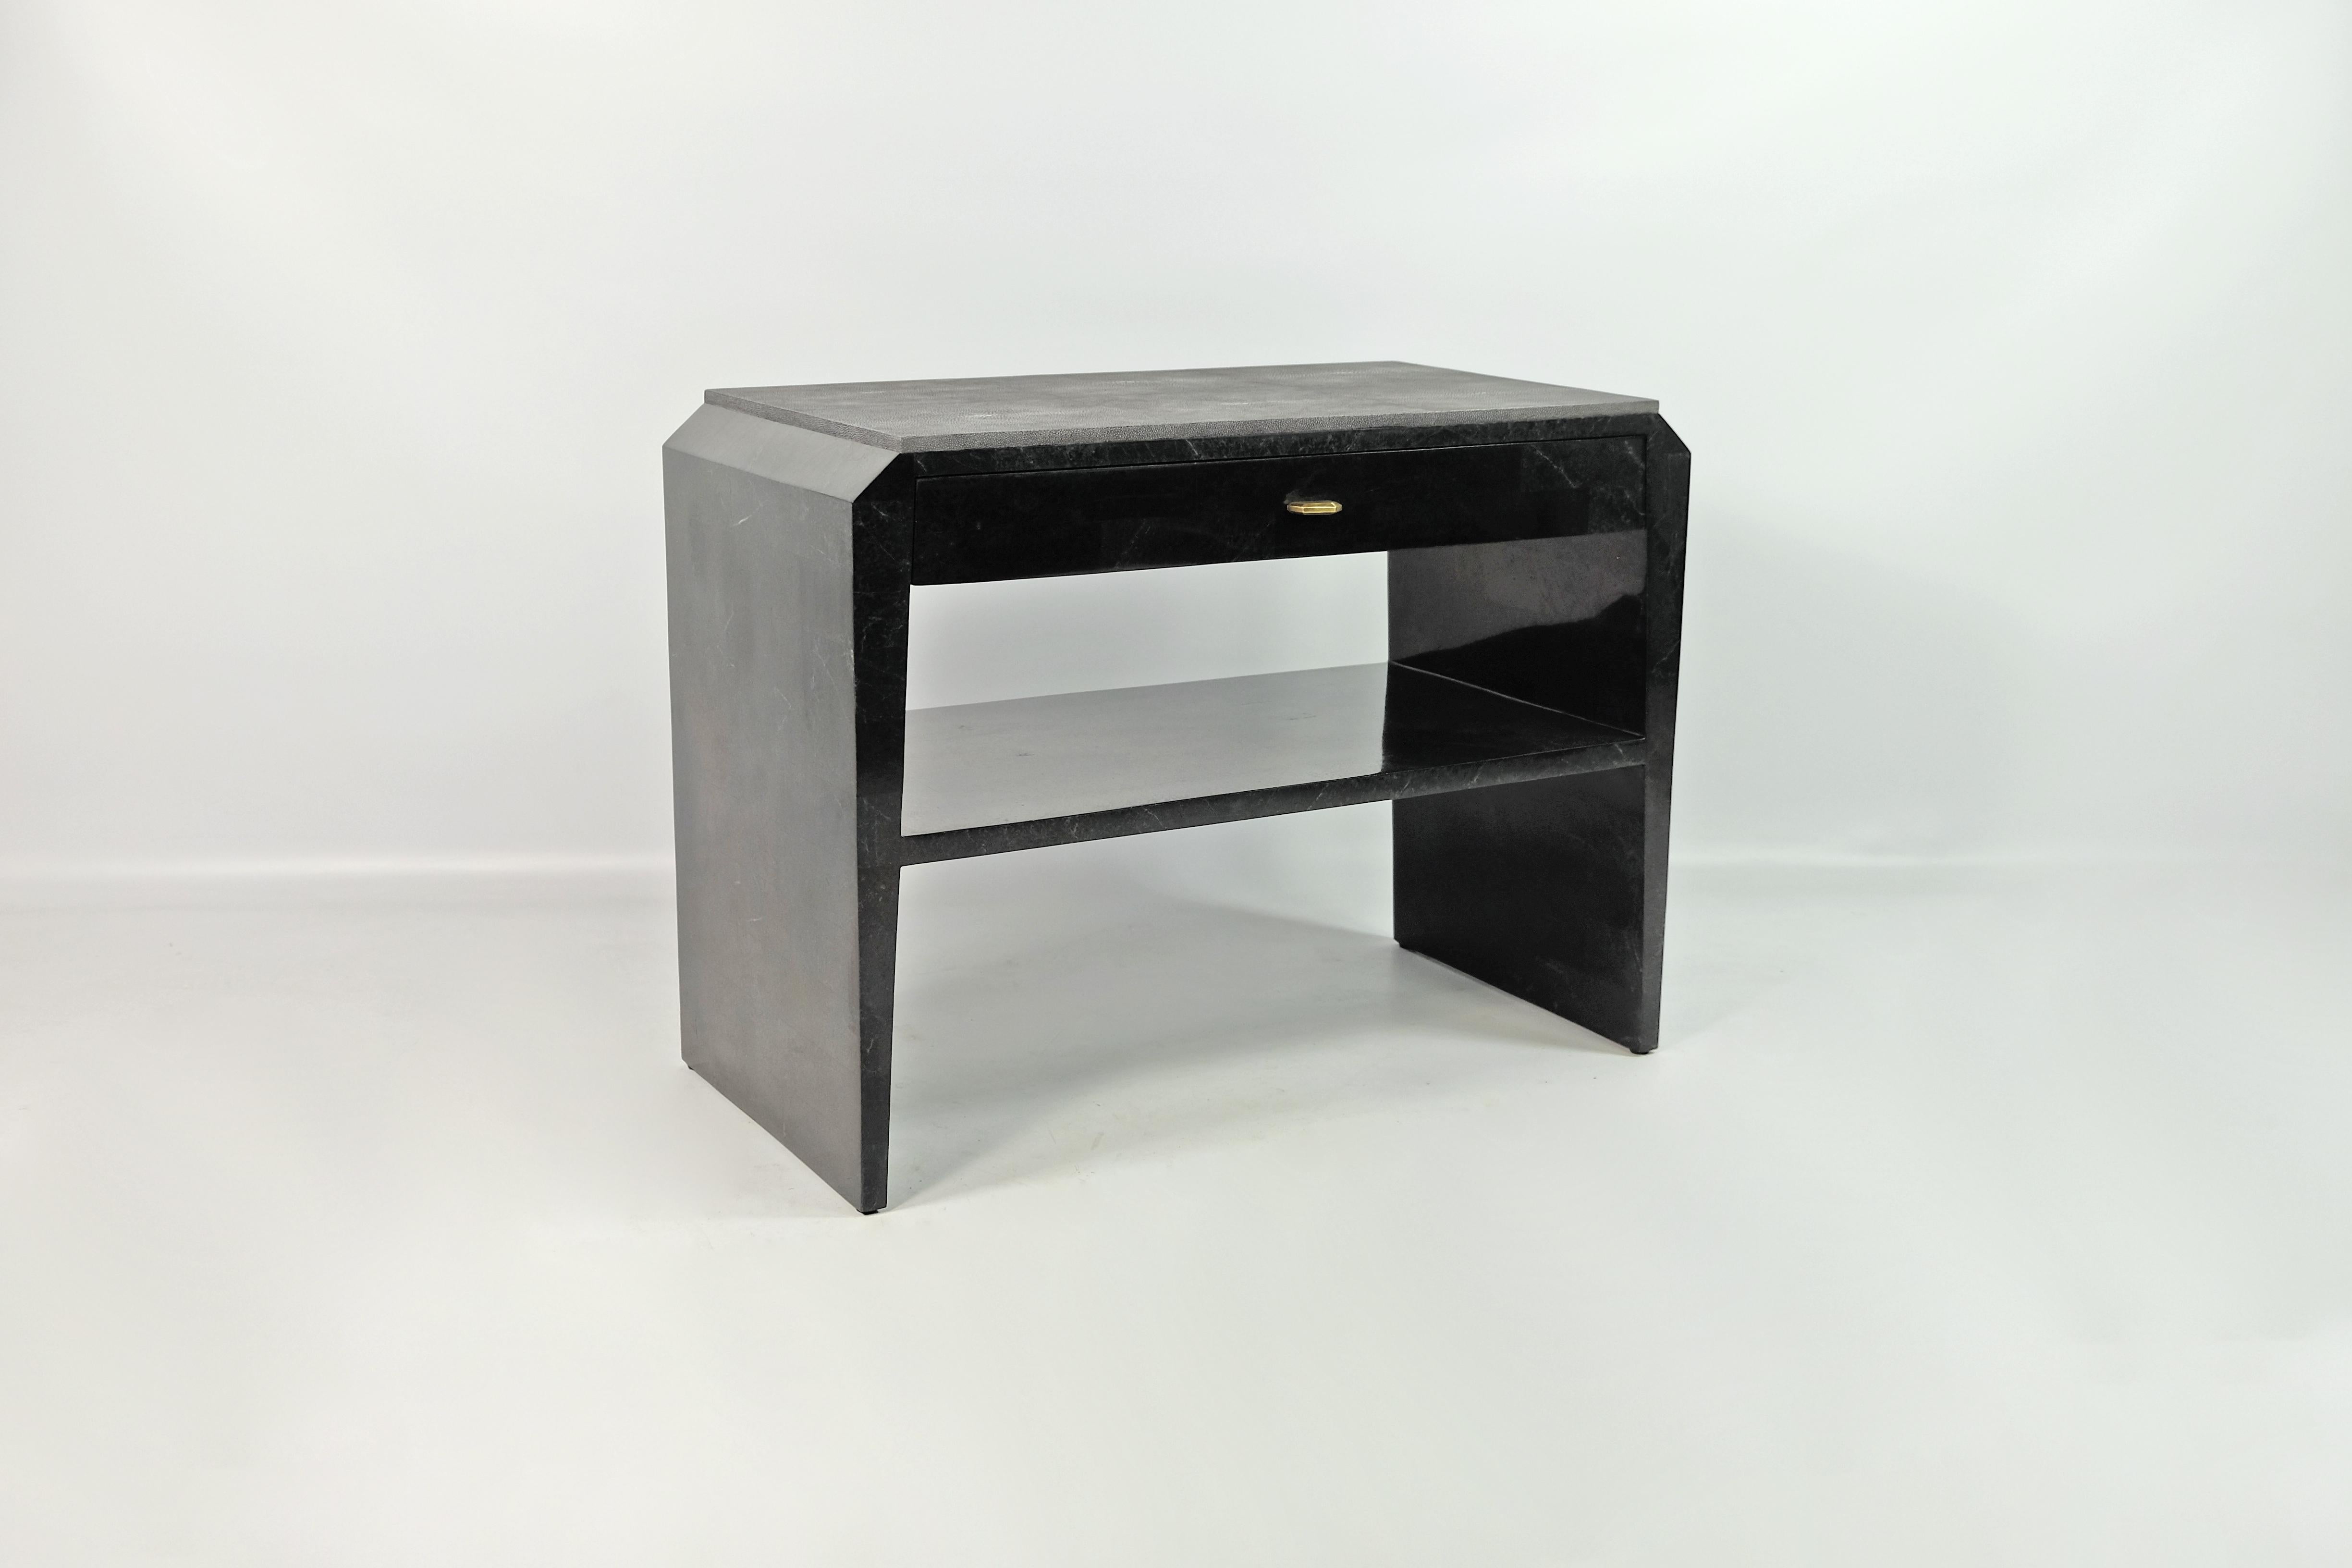 Cette paire de tables de chevet est réalisée en marqueterie de pierre noire (granit) avec un plateau en galuchat.
 
Il y a un tiroir avec un intérieur en placage de bois foncé, et une étagère en pierre noire.
Les boutons sont en laiton avec une